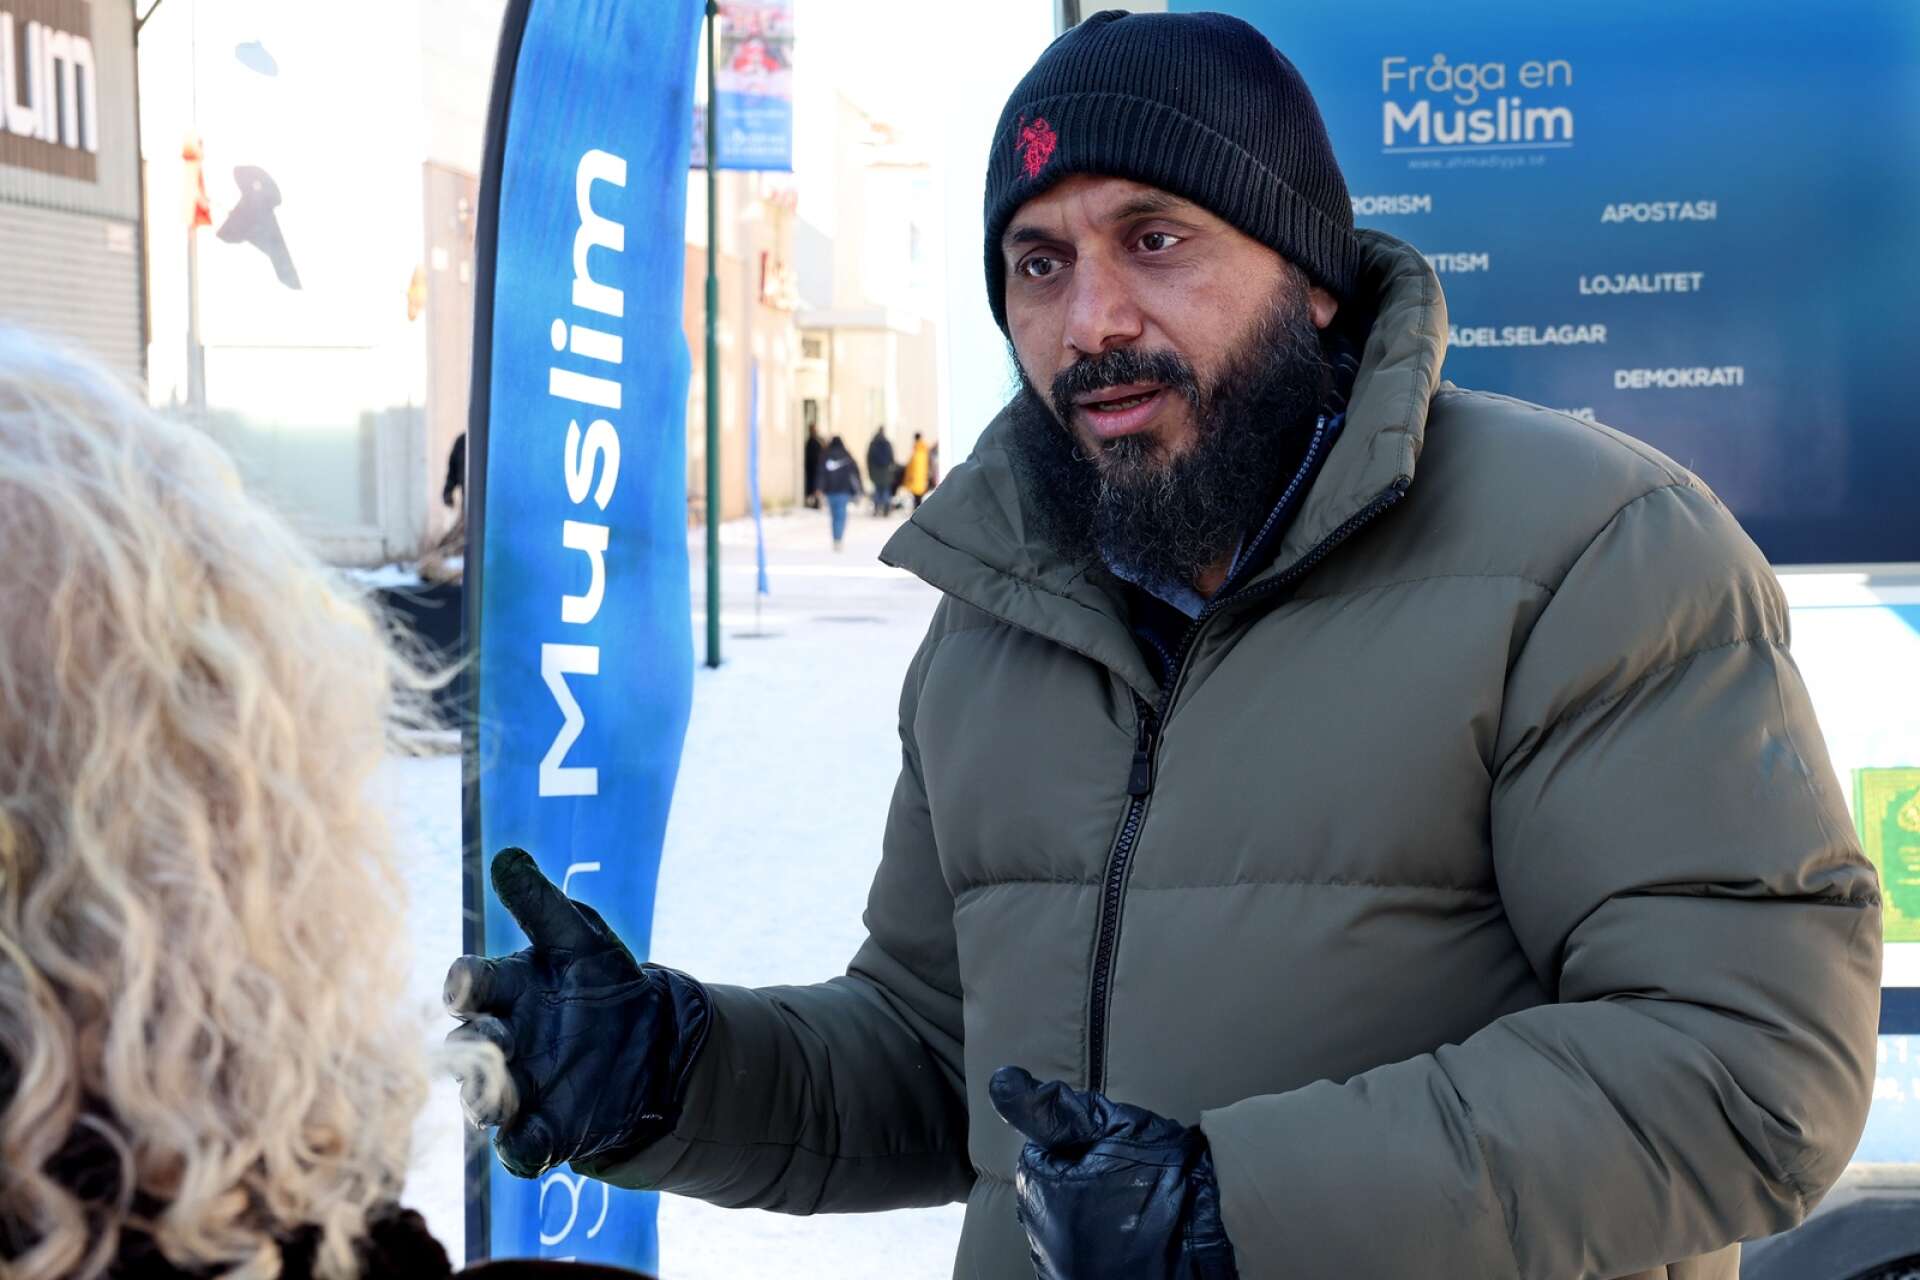 Rizwan Ahmad Afzal är en av imamerna som åker runt i Sverige för att föreläsa om islam. Ett koncept som kallas ”Fråga en muslim”.